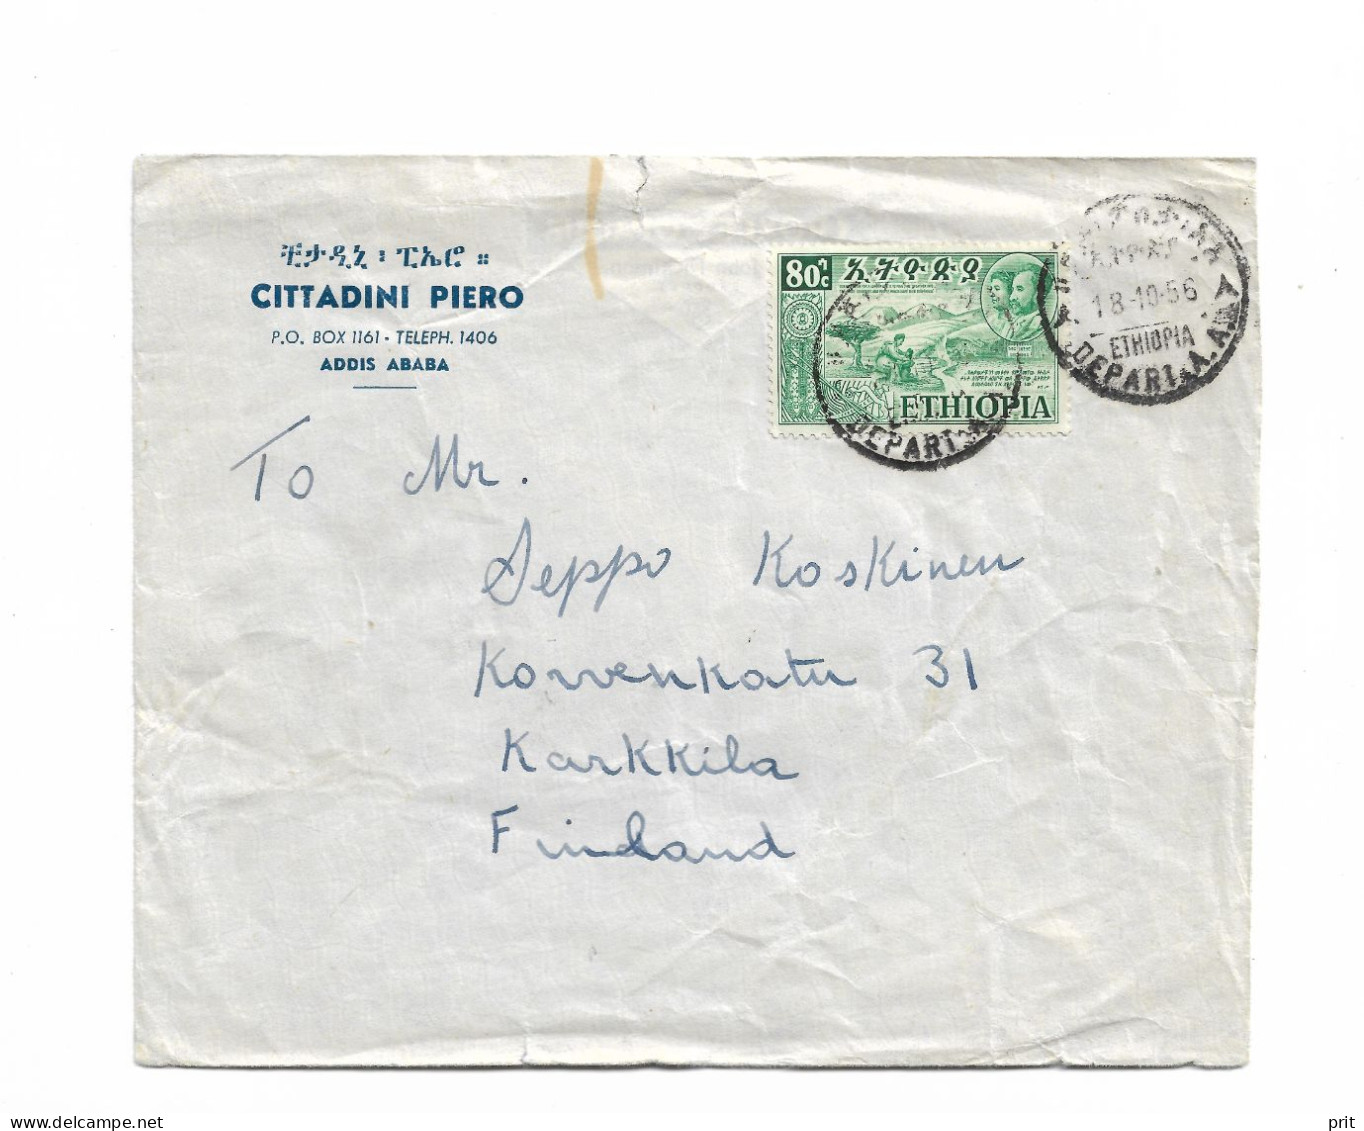 Addis Ababa Ethiopia Cover To Karkkila, Finland 1956 - Äthiopien